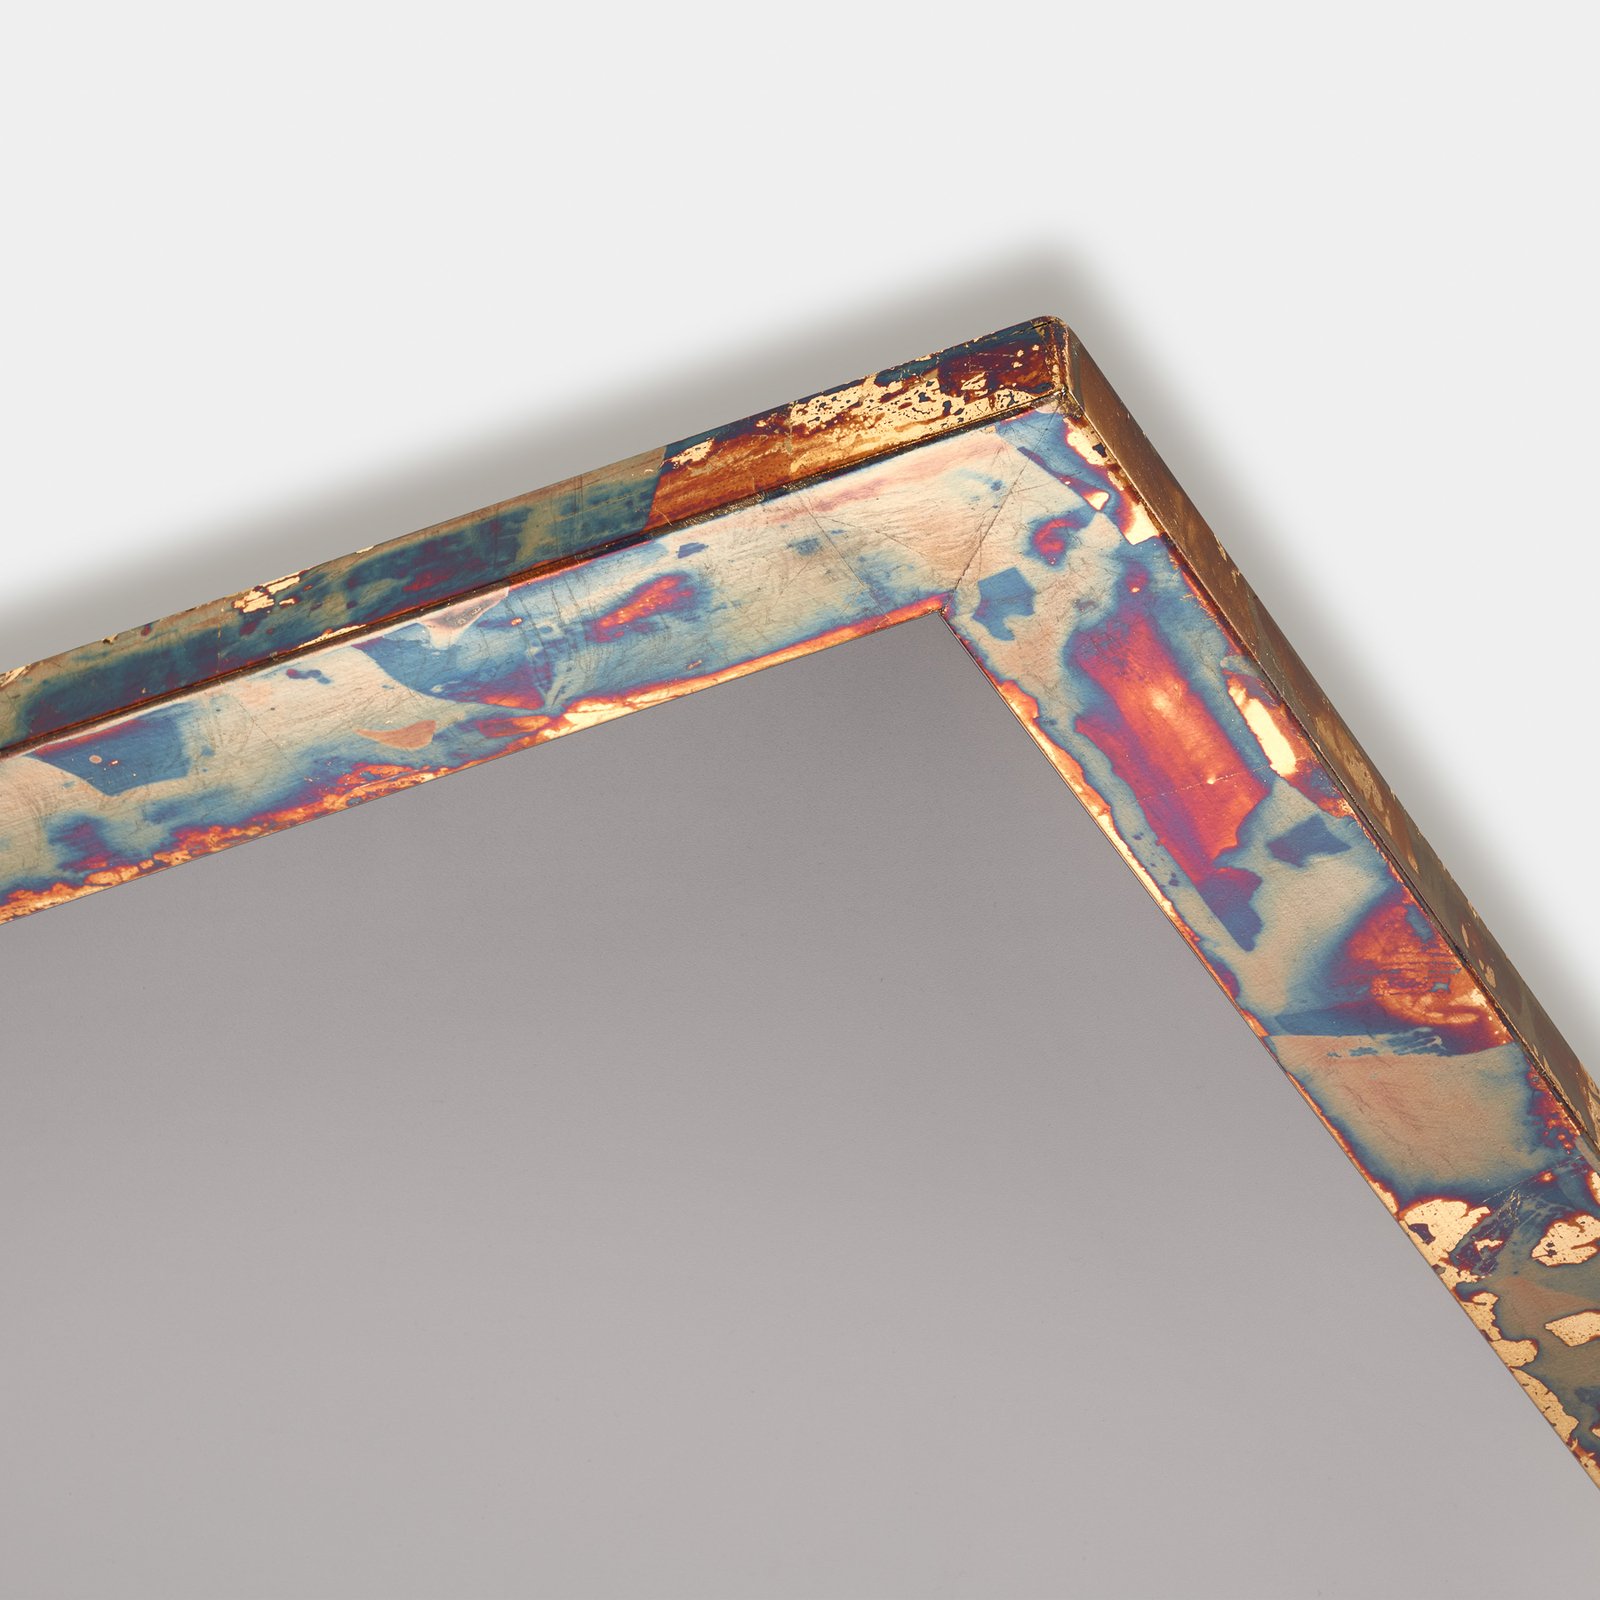 Quitani LED-Panel Aurinor, goldfarbig, 45 cm